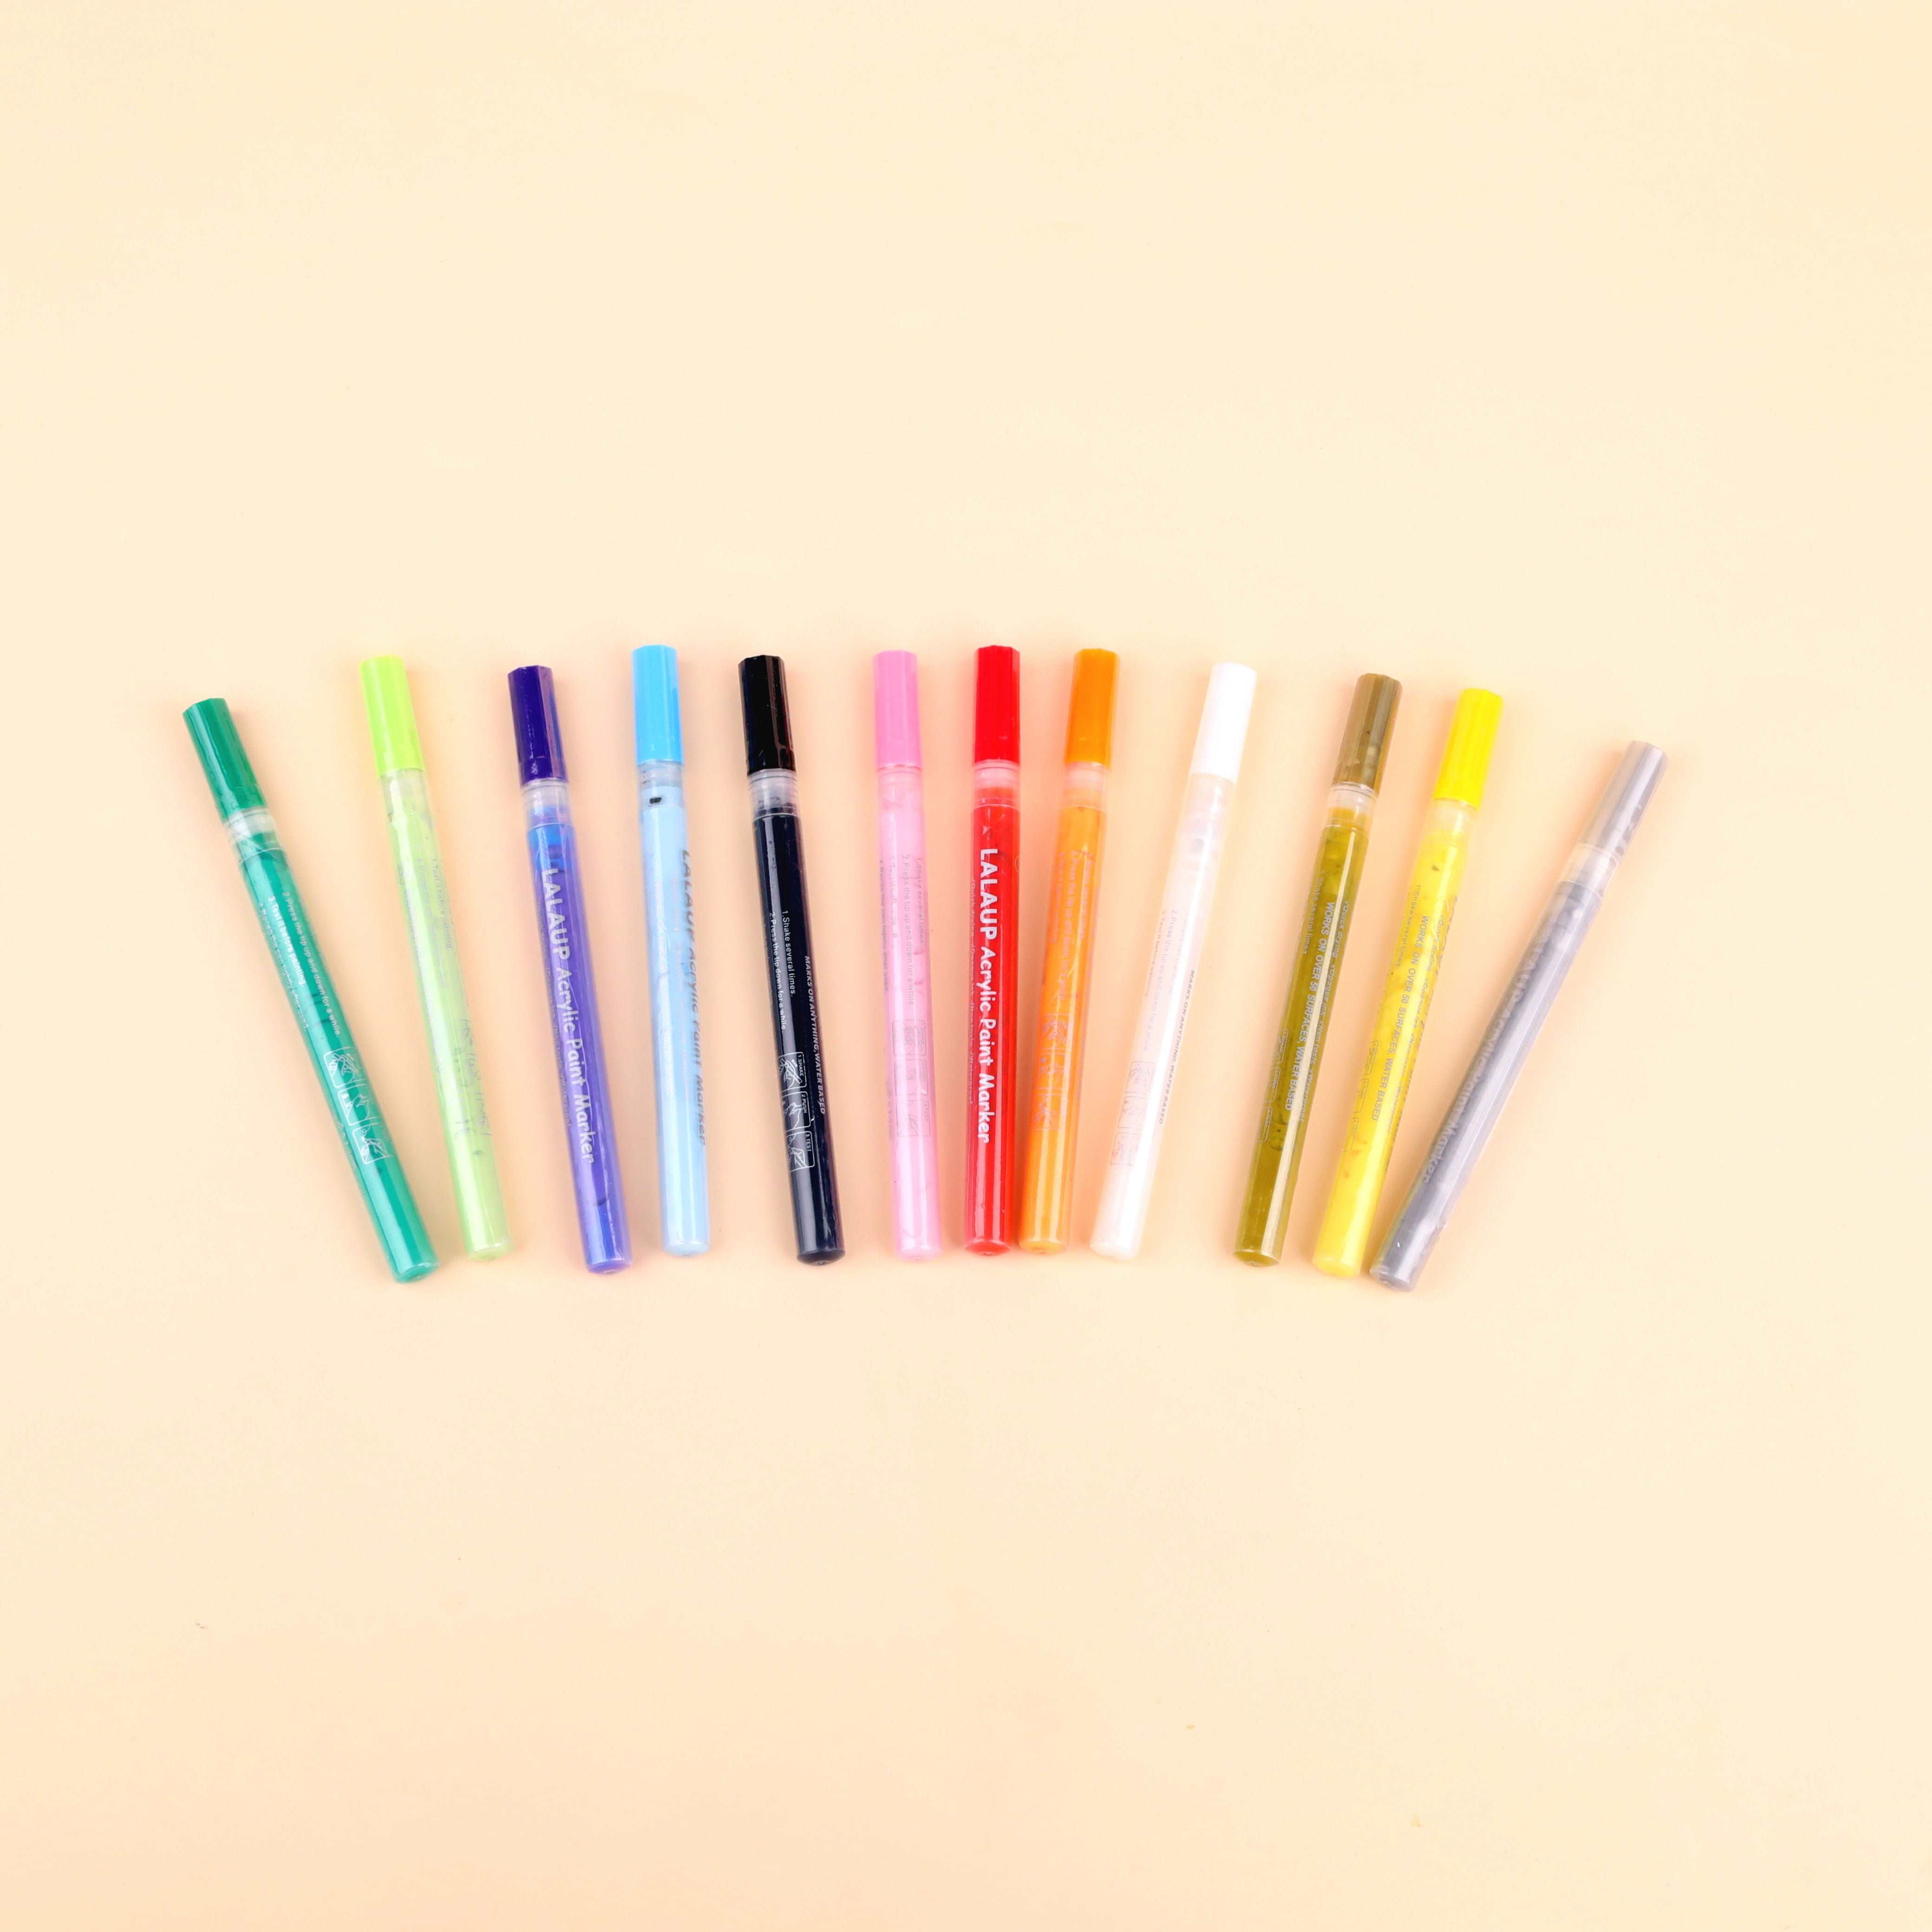 Acrylic Paint Pens - 12 Colors Nail Art Pens Waterproof